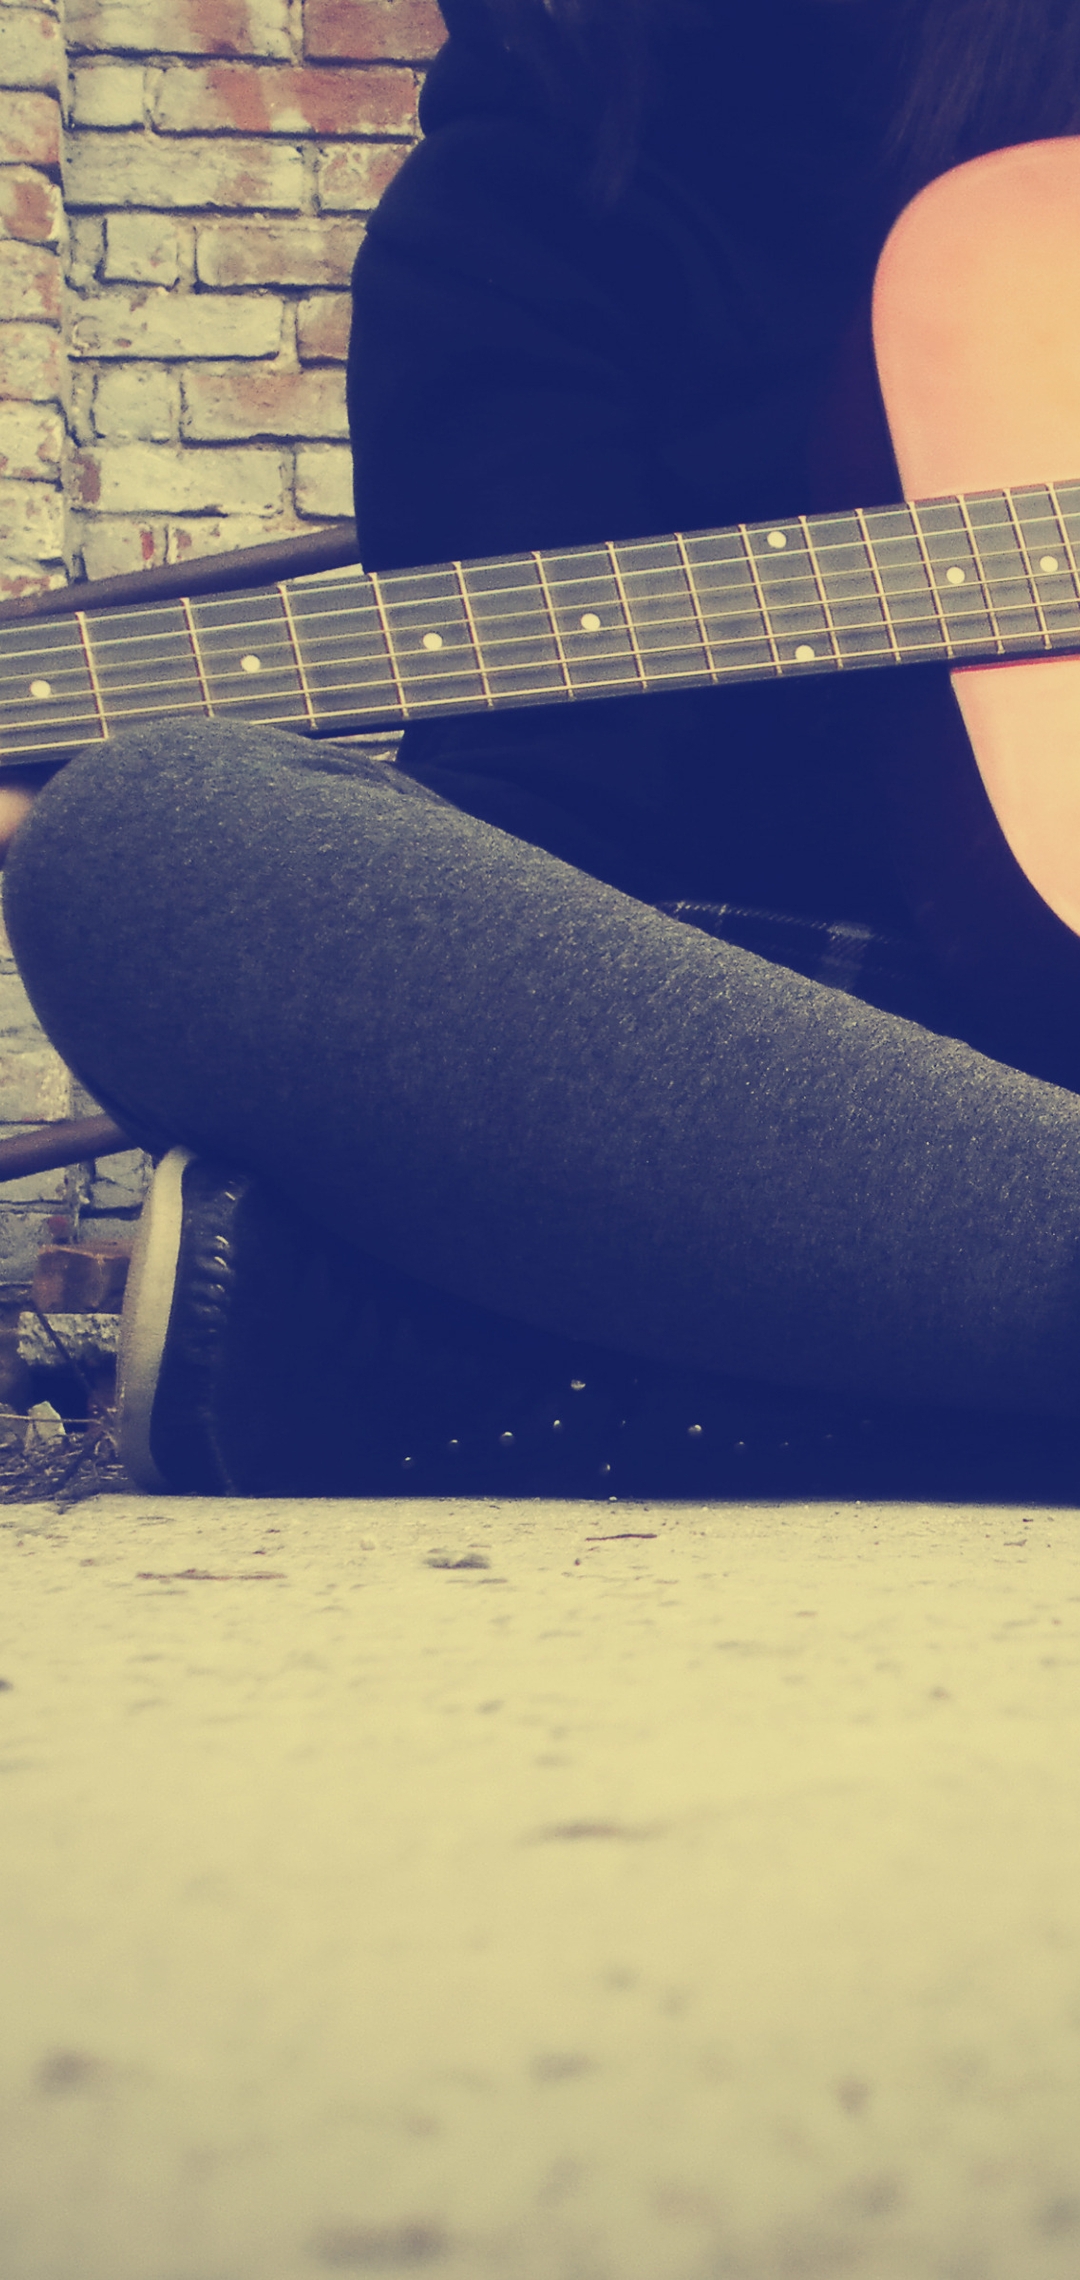 Картинка: Девушка, сидит, гитара, струны, играет, кирпичная стена